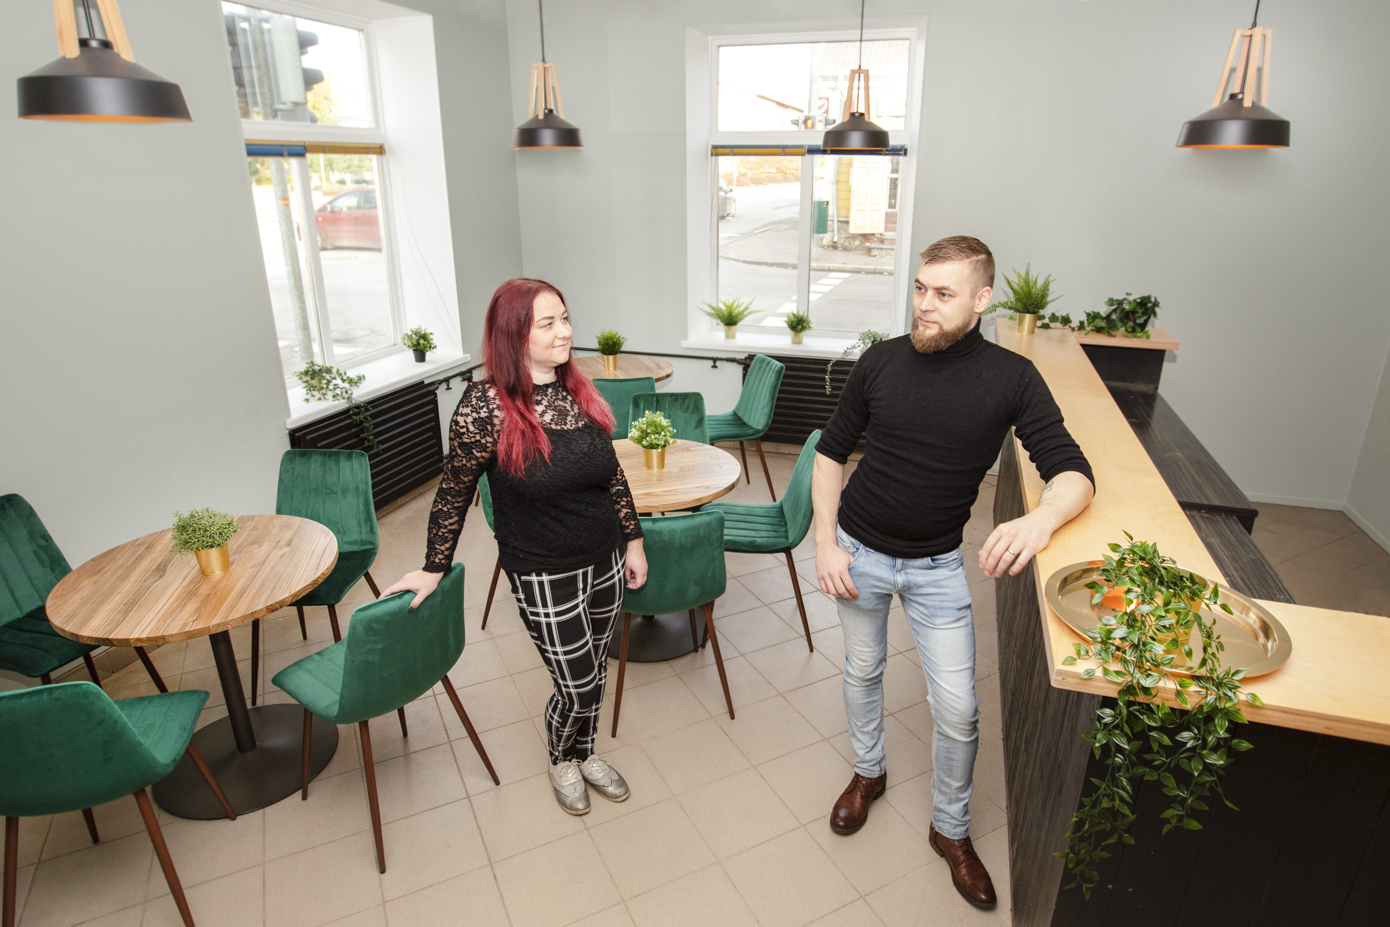 Kolm aastat Sulbi kohvikut pidanud Kristina ja Indrek Noorsalu avavad peagi Võru kesklinnas kohviku Karamell. Veel eile pärastlõunalgi käisid ruumides hoogsad ettevalmistused. Foto: AIGAR NAGEL